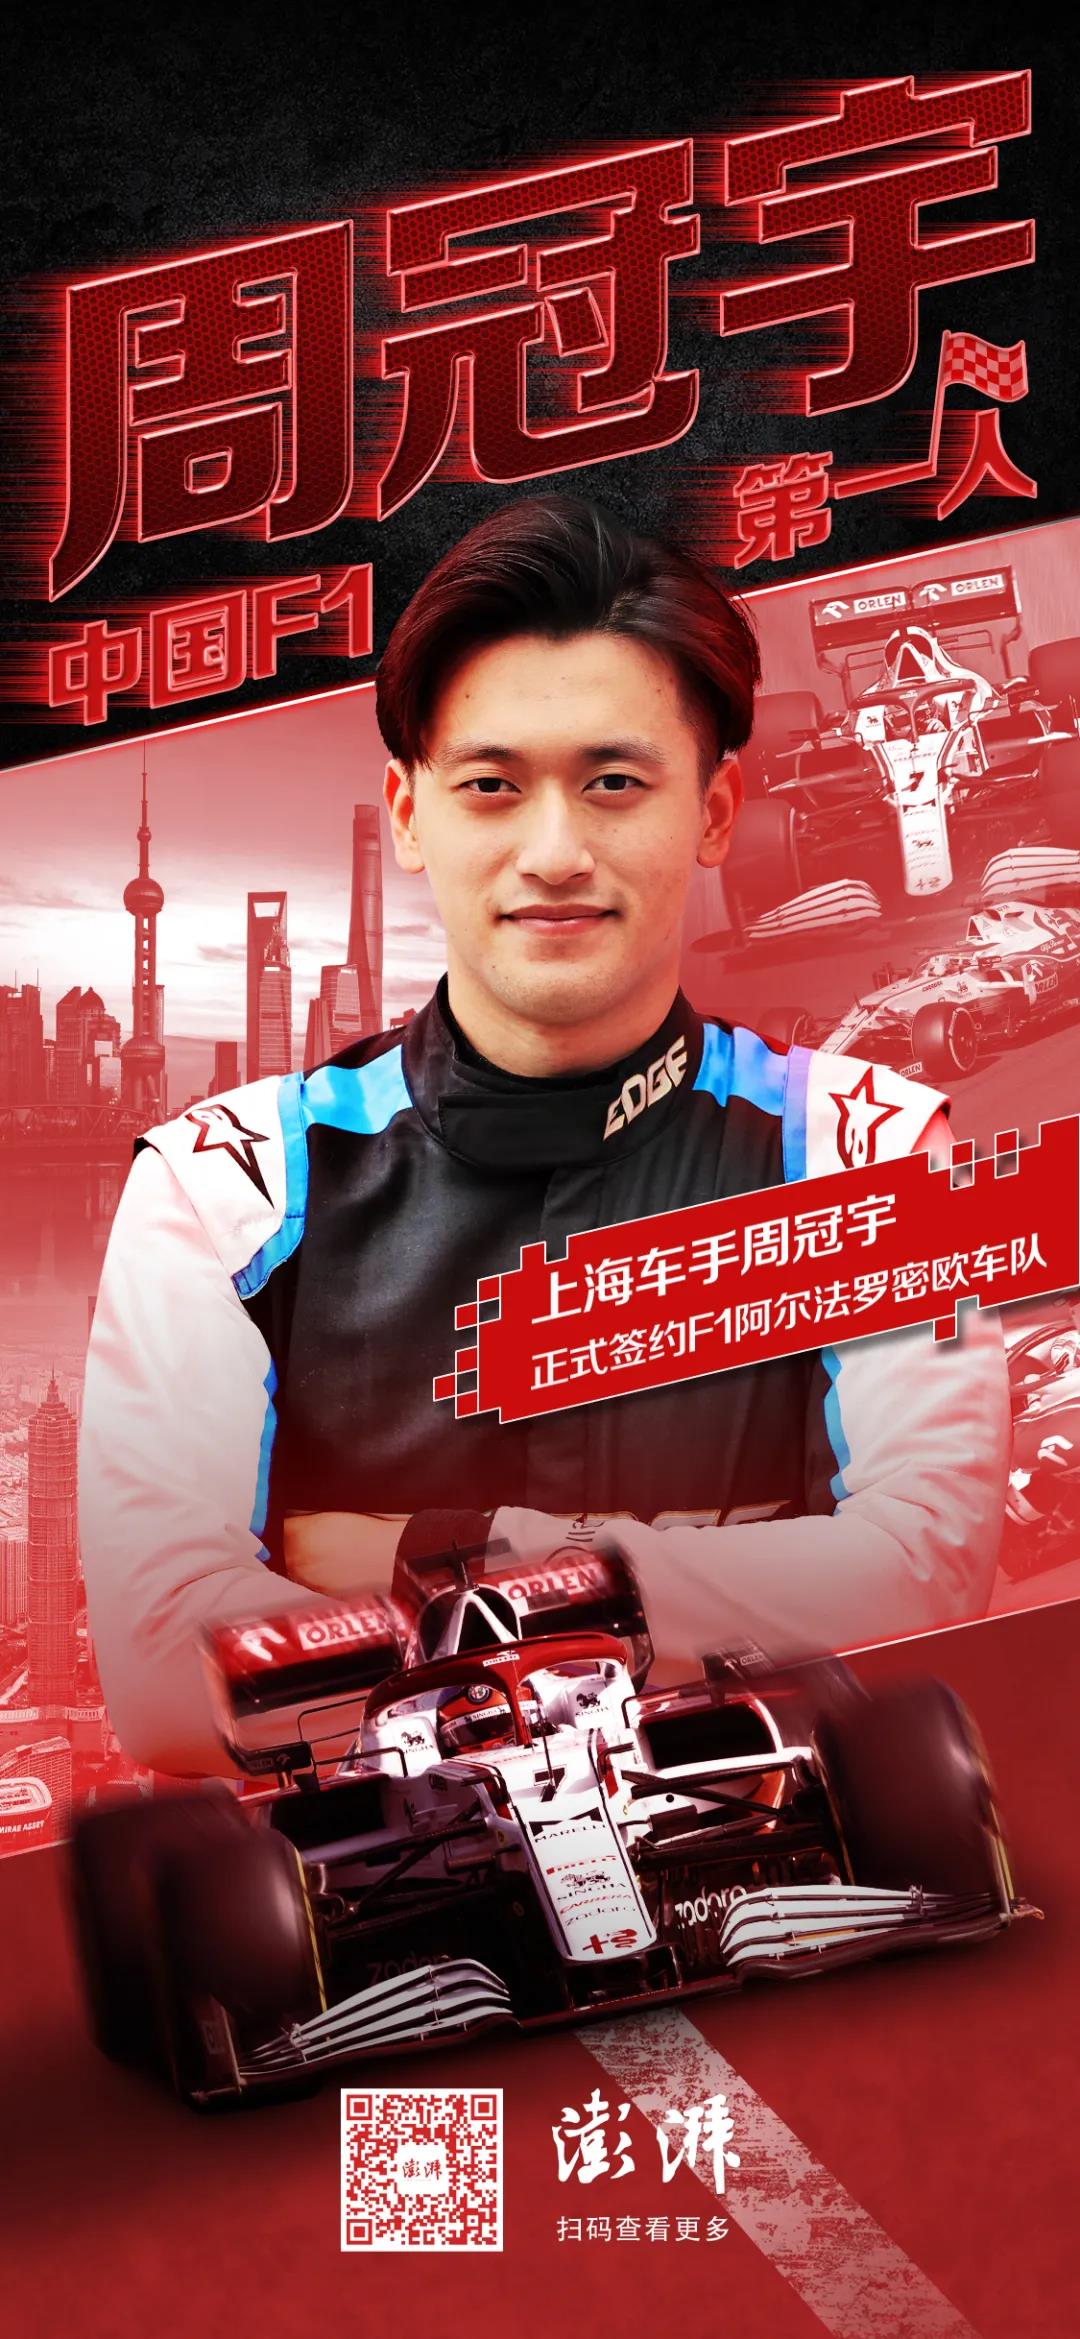 周冠宇将成为中国首位F1车手 实现儿时梦想_体育_央视网(cctv.com)